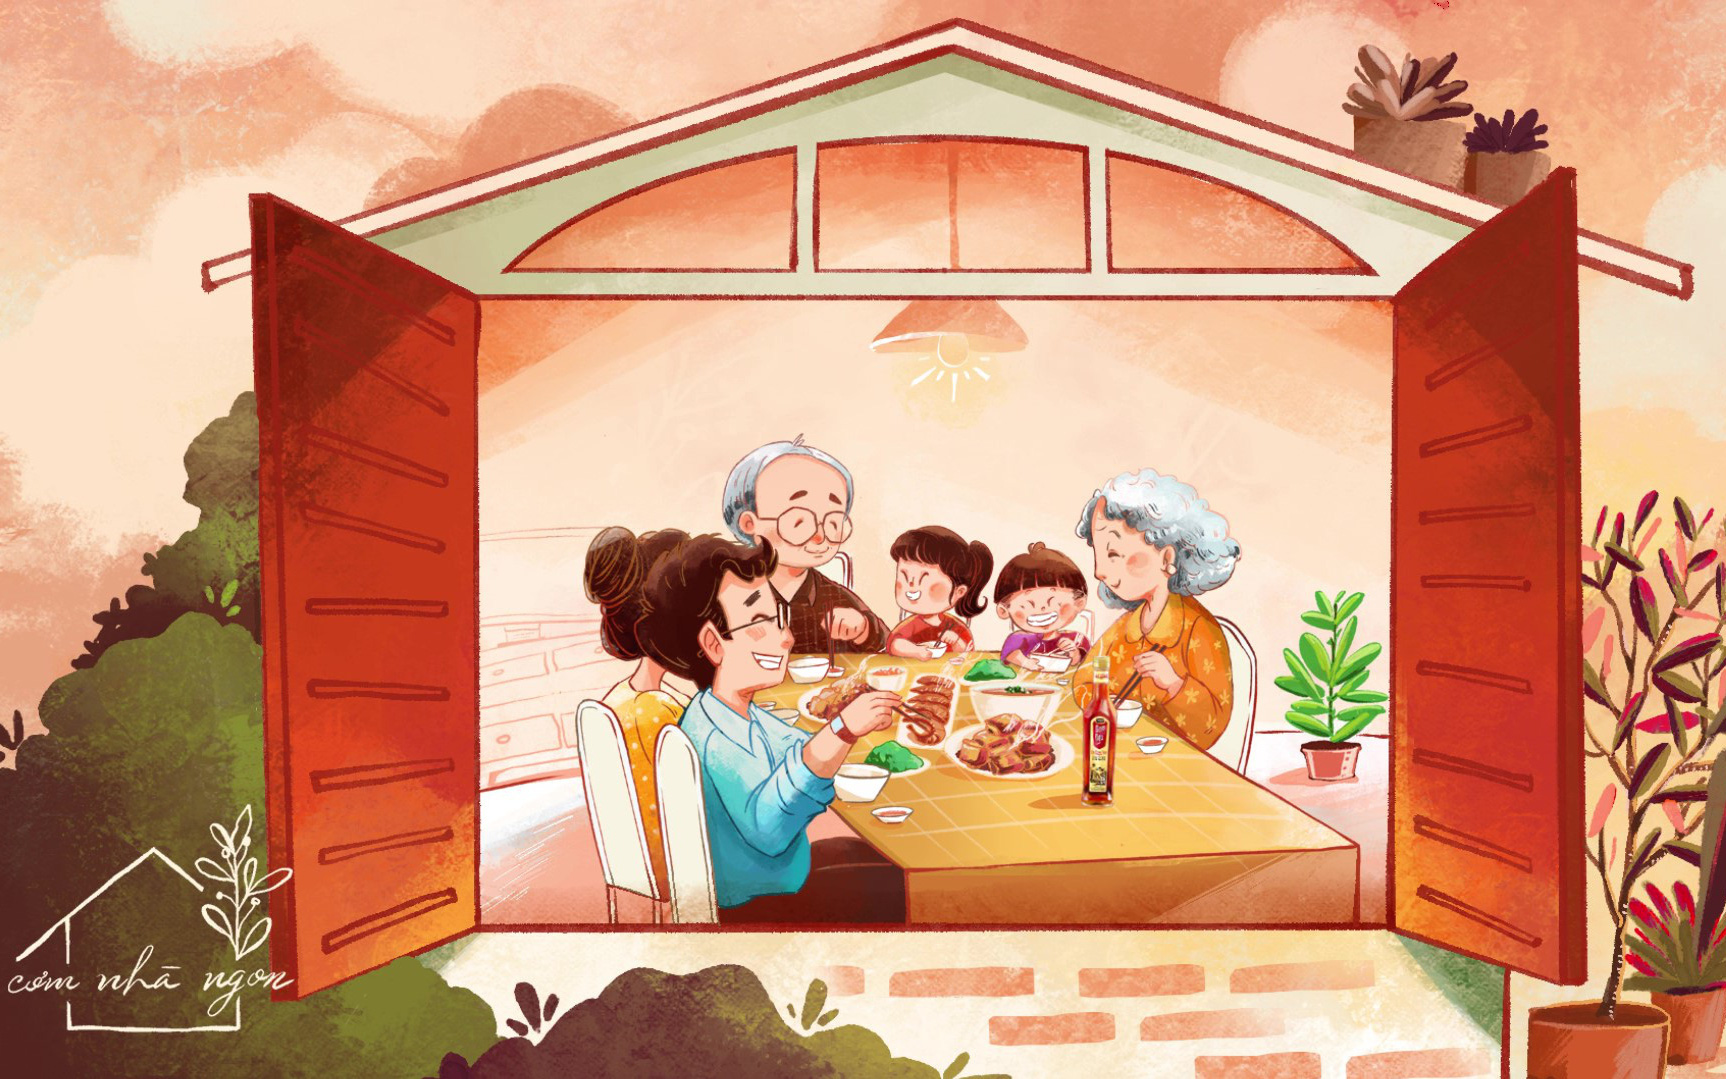 Nhìn lại mùa #Stayhome: Cư dân mạng tích cực truyền tay nhau một video ý nghĩa về bữa cơm nhà